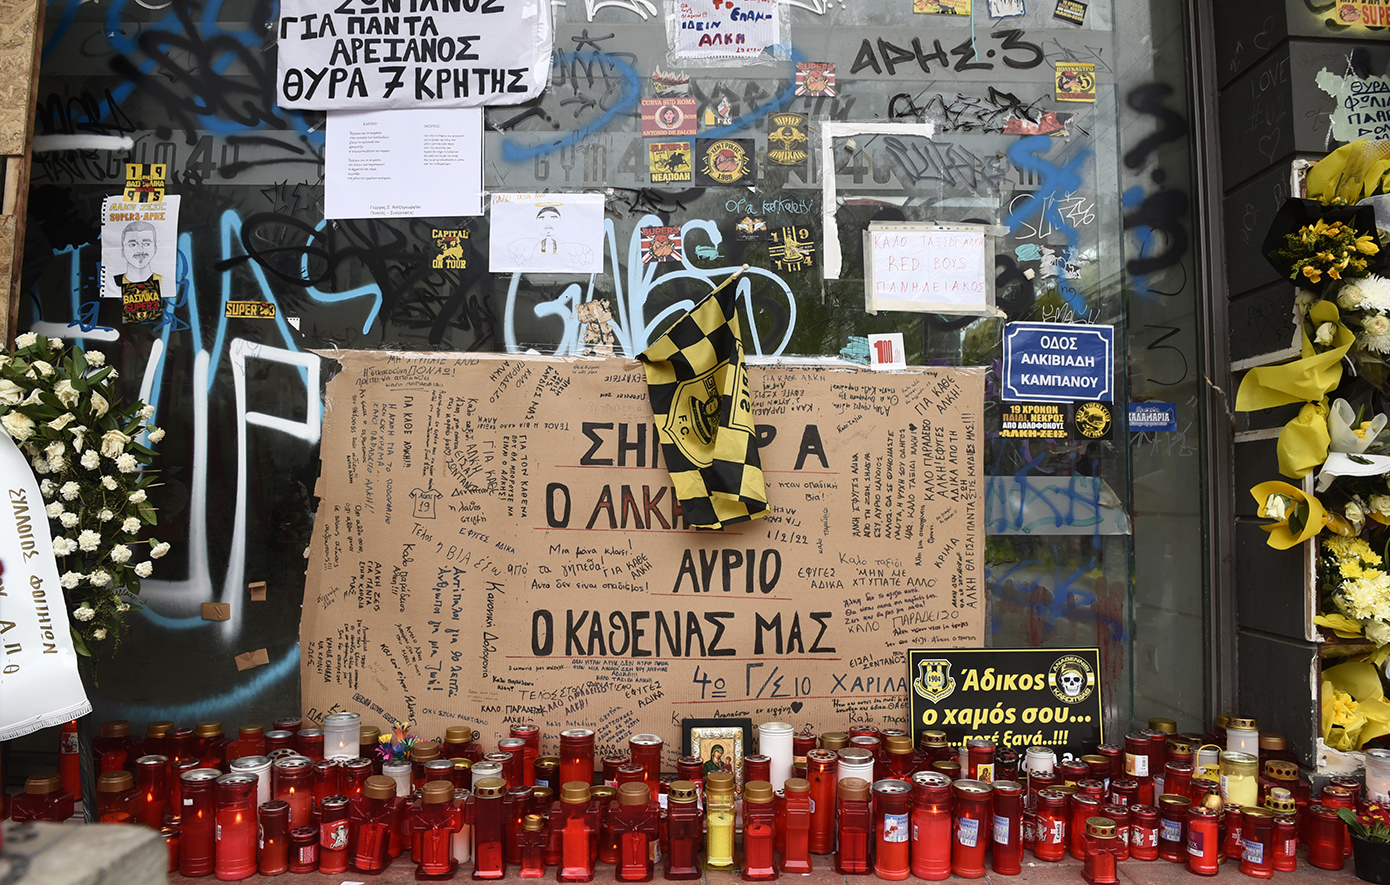 Μαζεύονται τα αντικείμενα από το σημείο της δολοφονίας του Άλκη Καμπανού επειδή νοικιάστηκε το κατάστημα